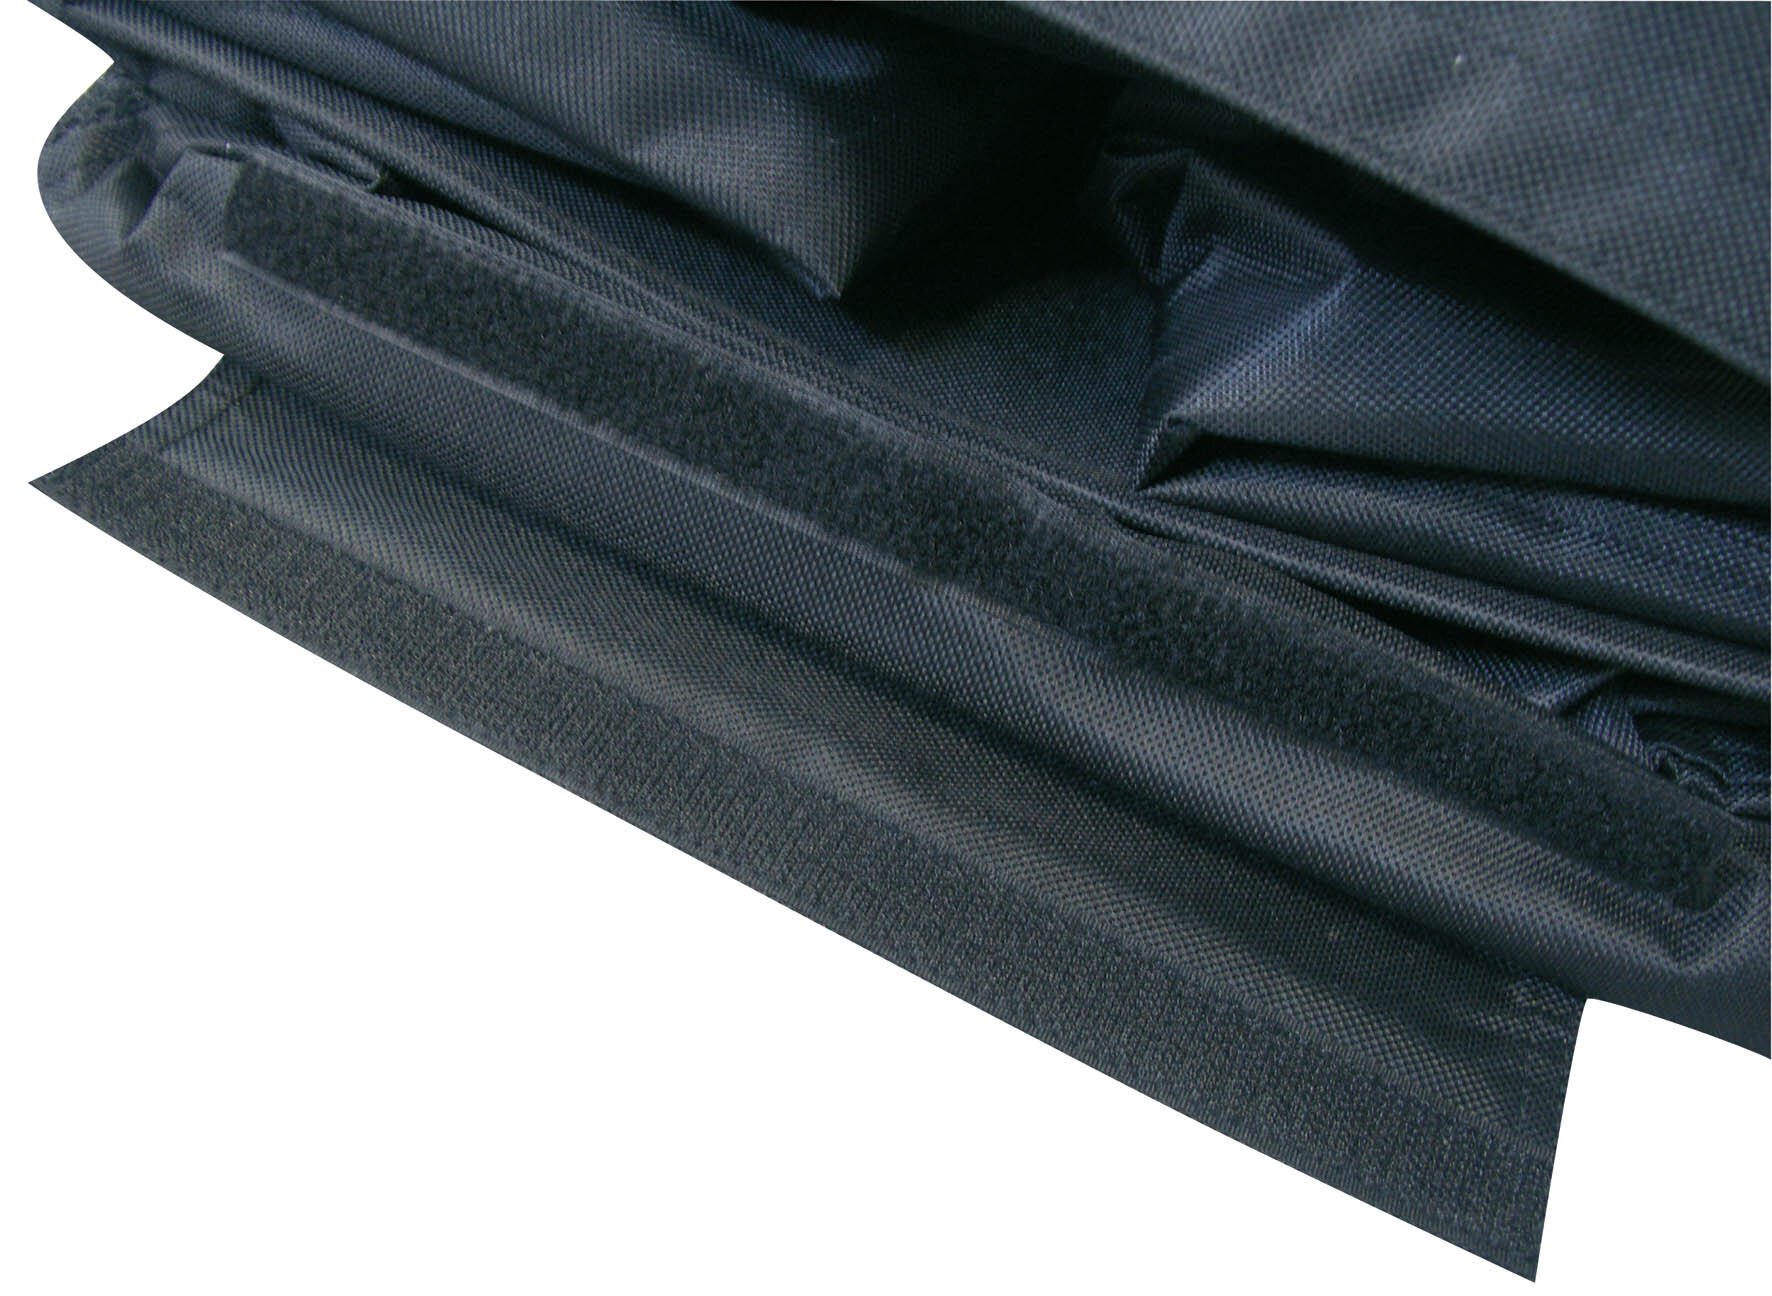 Kofferraum Organizer, Kofferraumtasche 70x37 cm schwarz